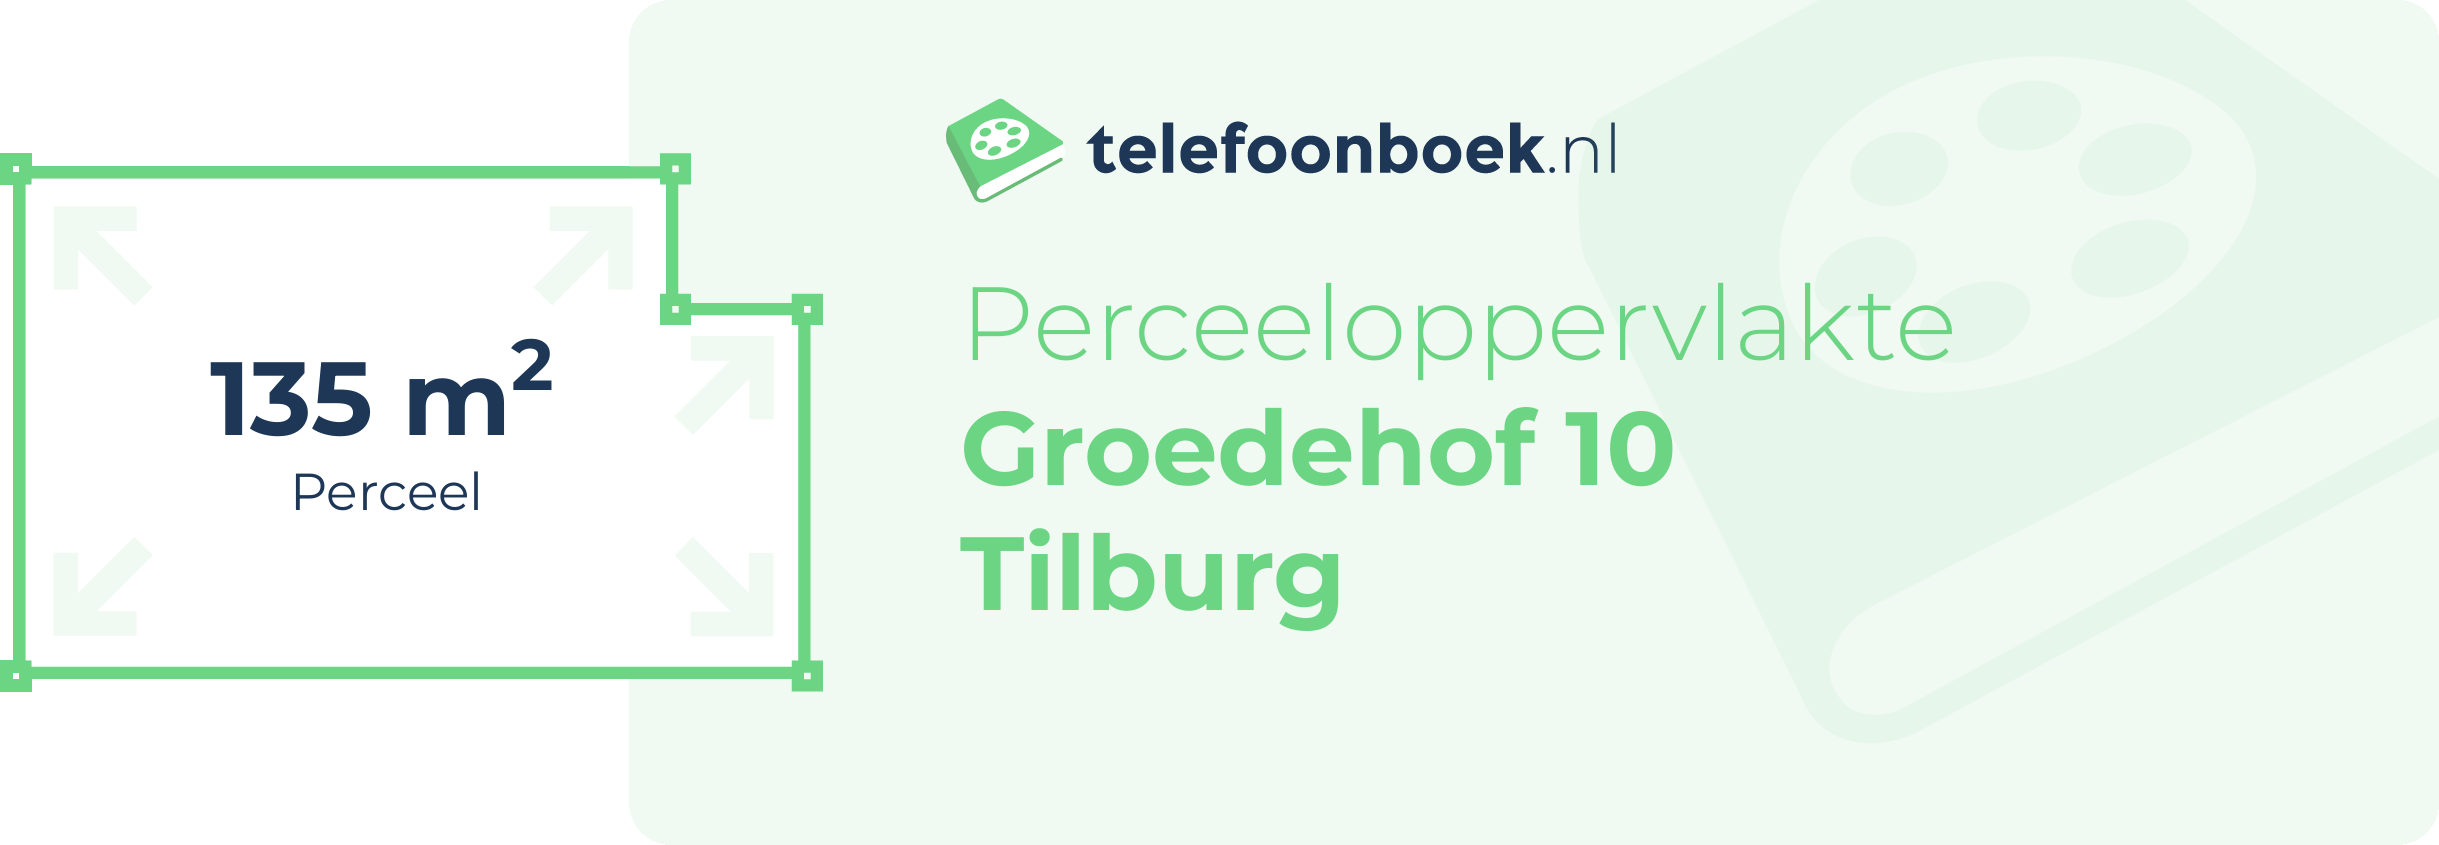 Perceeloppervlakte Groedehof 10 Tilburg